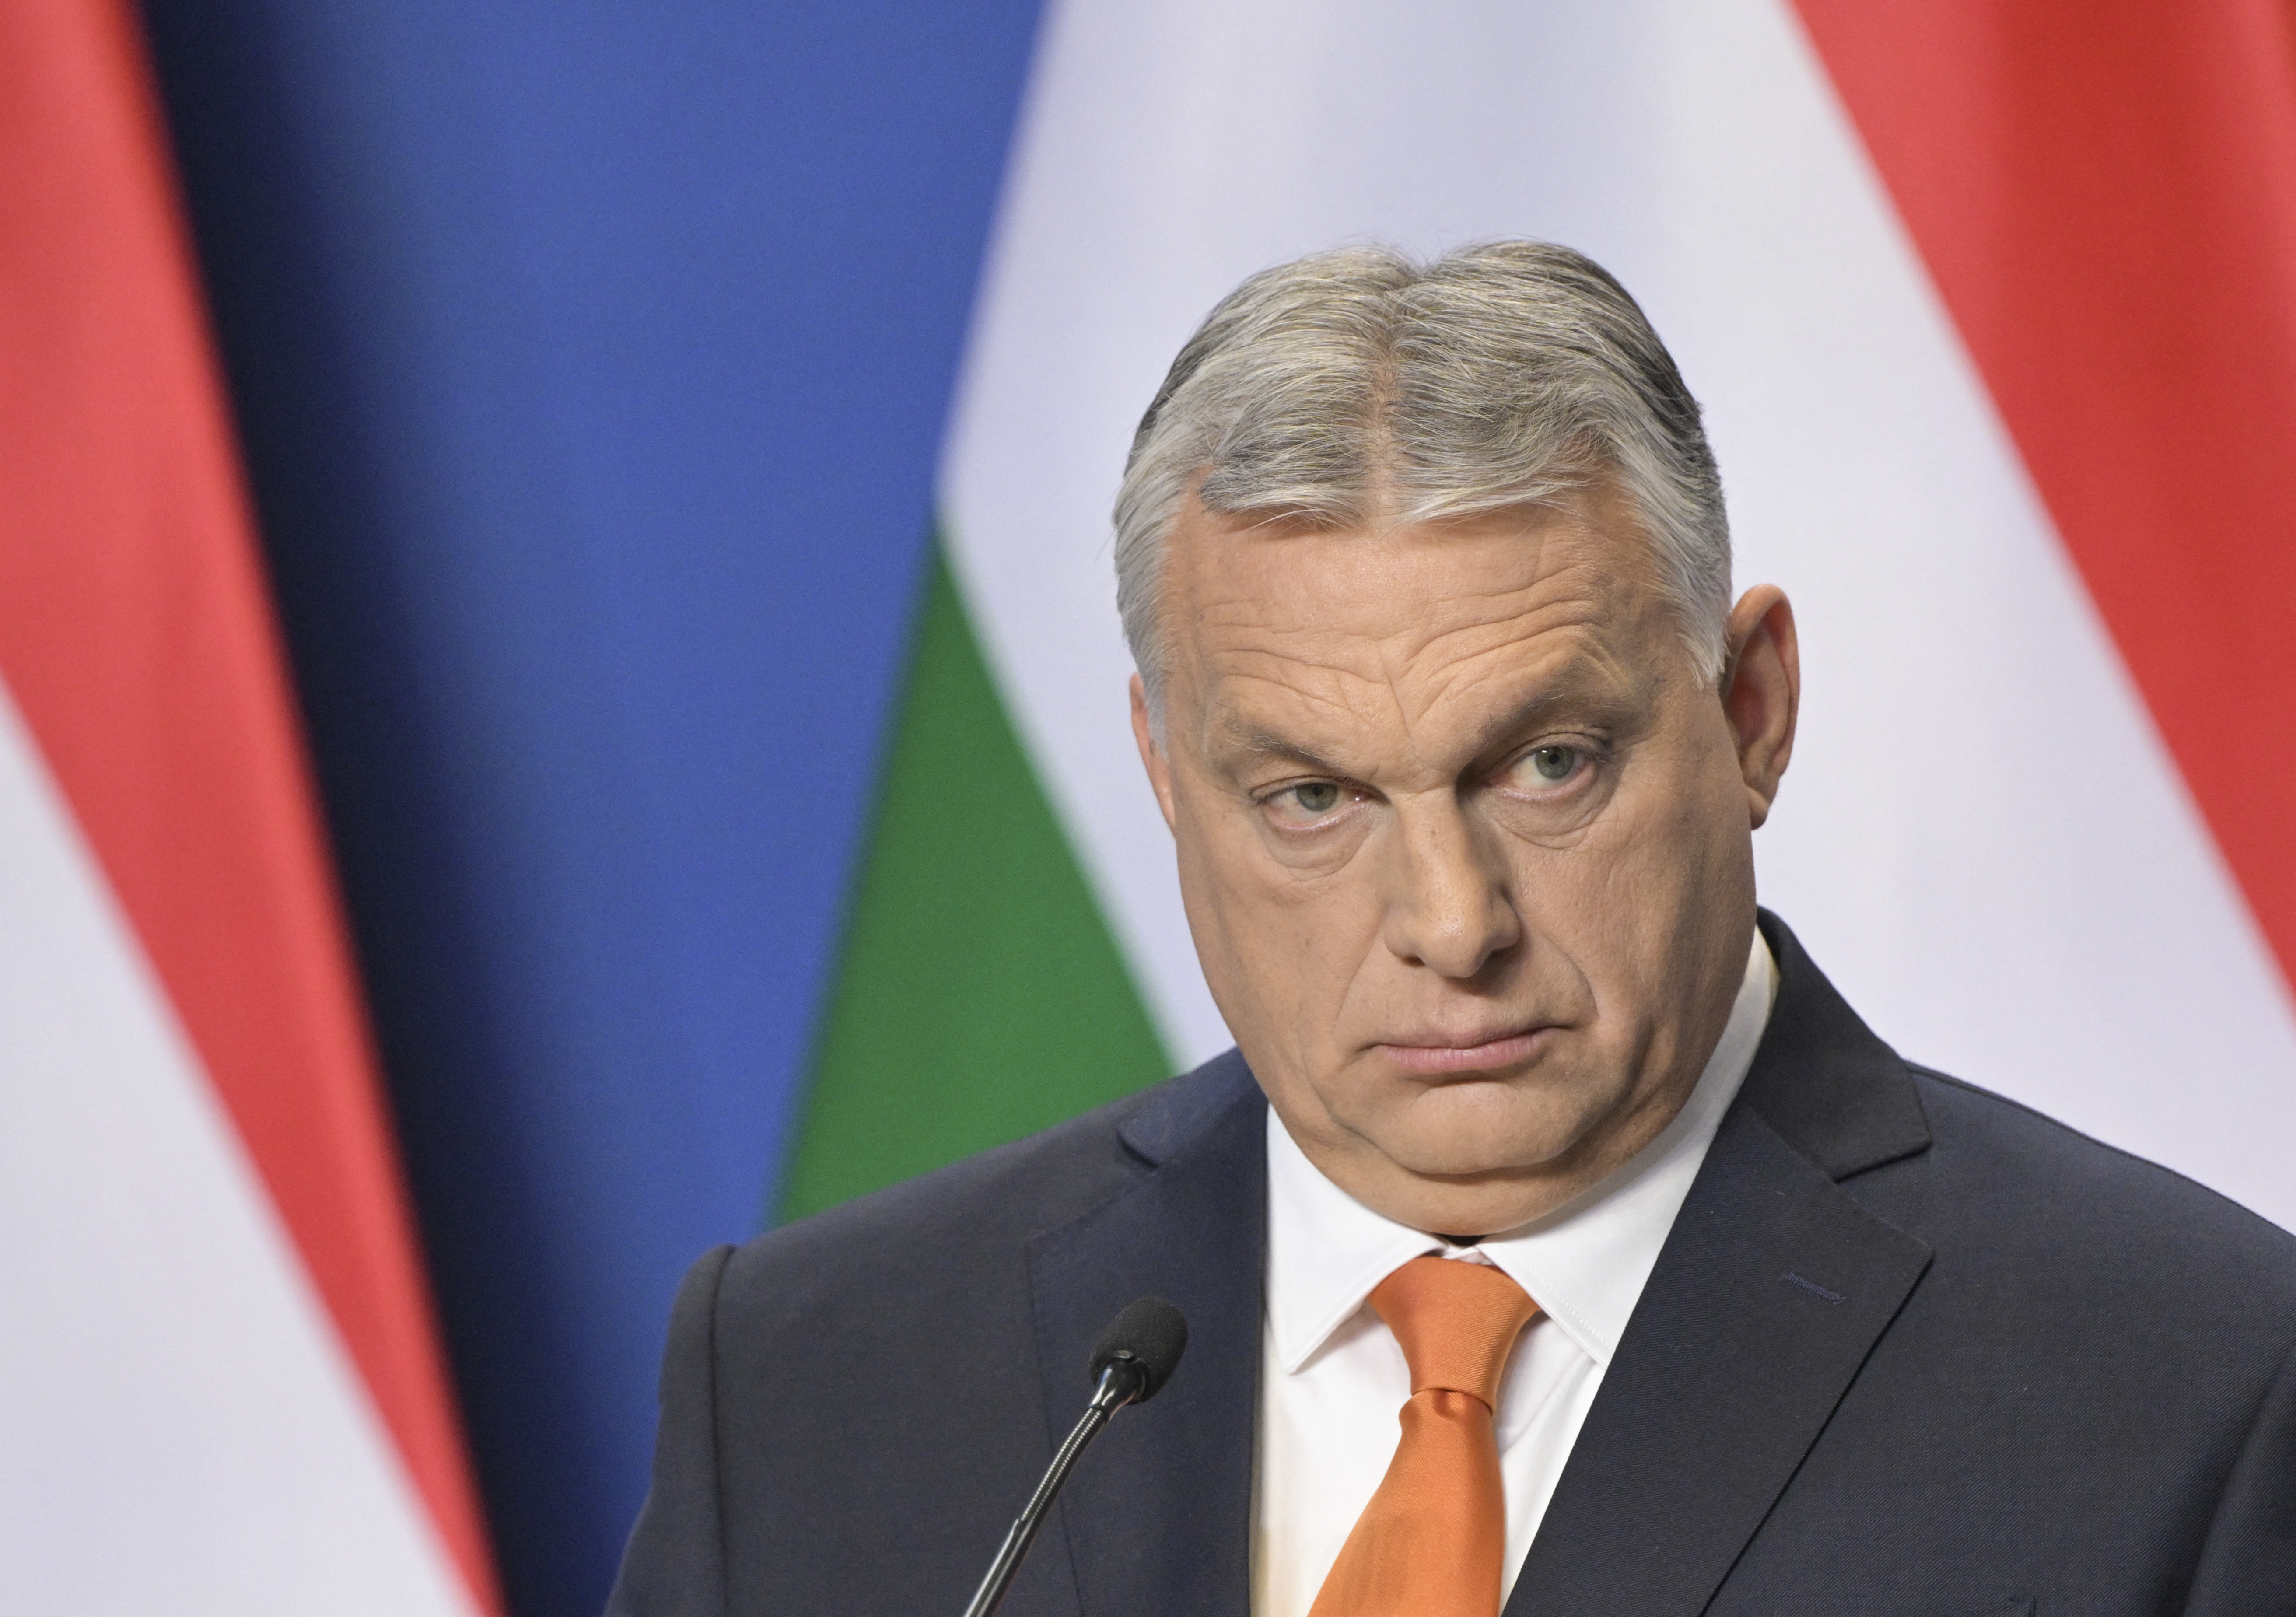 Az EU megvitatja, hogy enyhítsen-e az orosz olajembargón a magyar ellenállás miatt